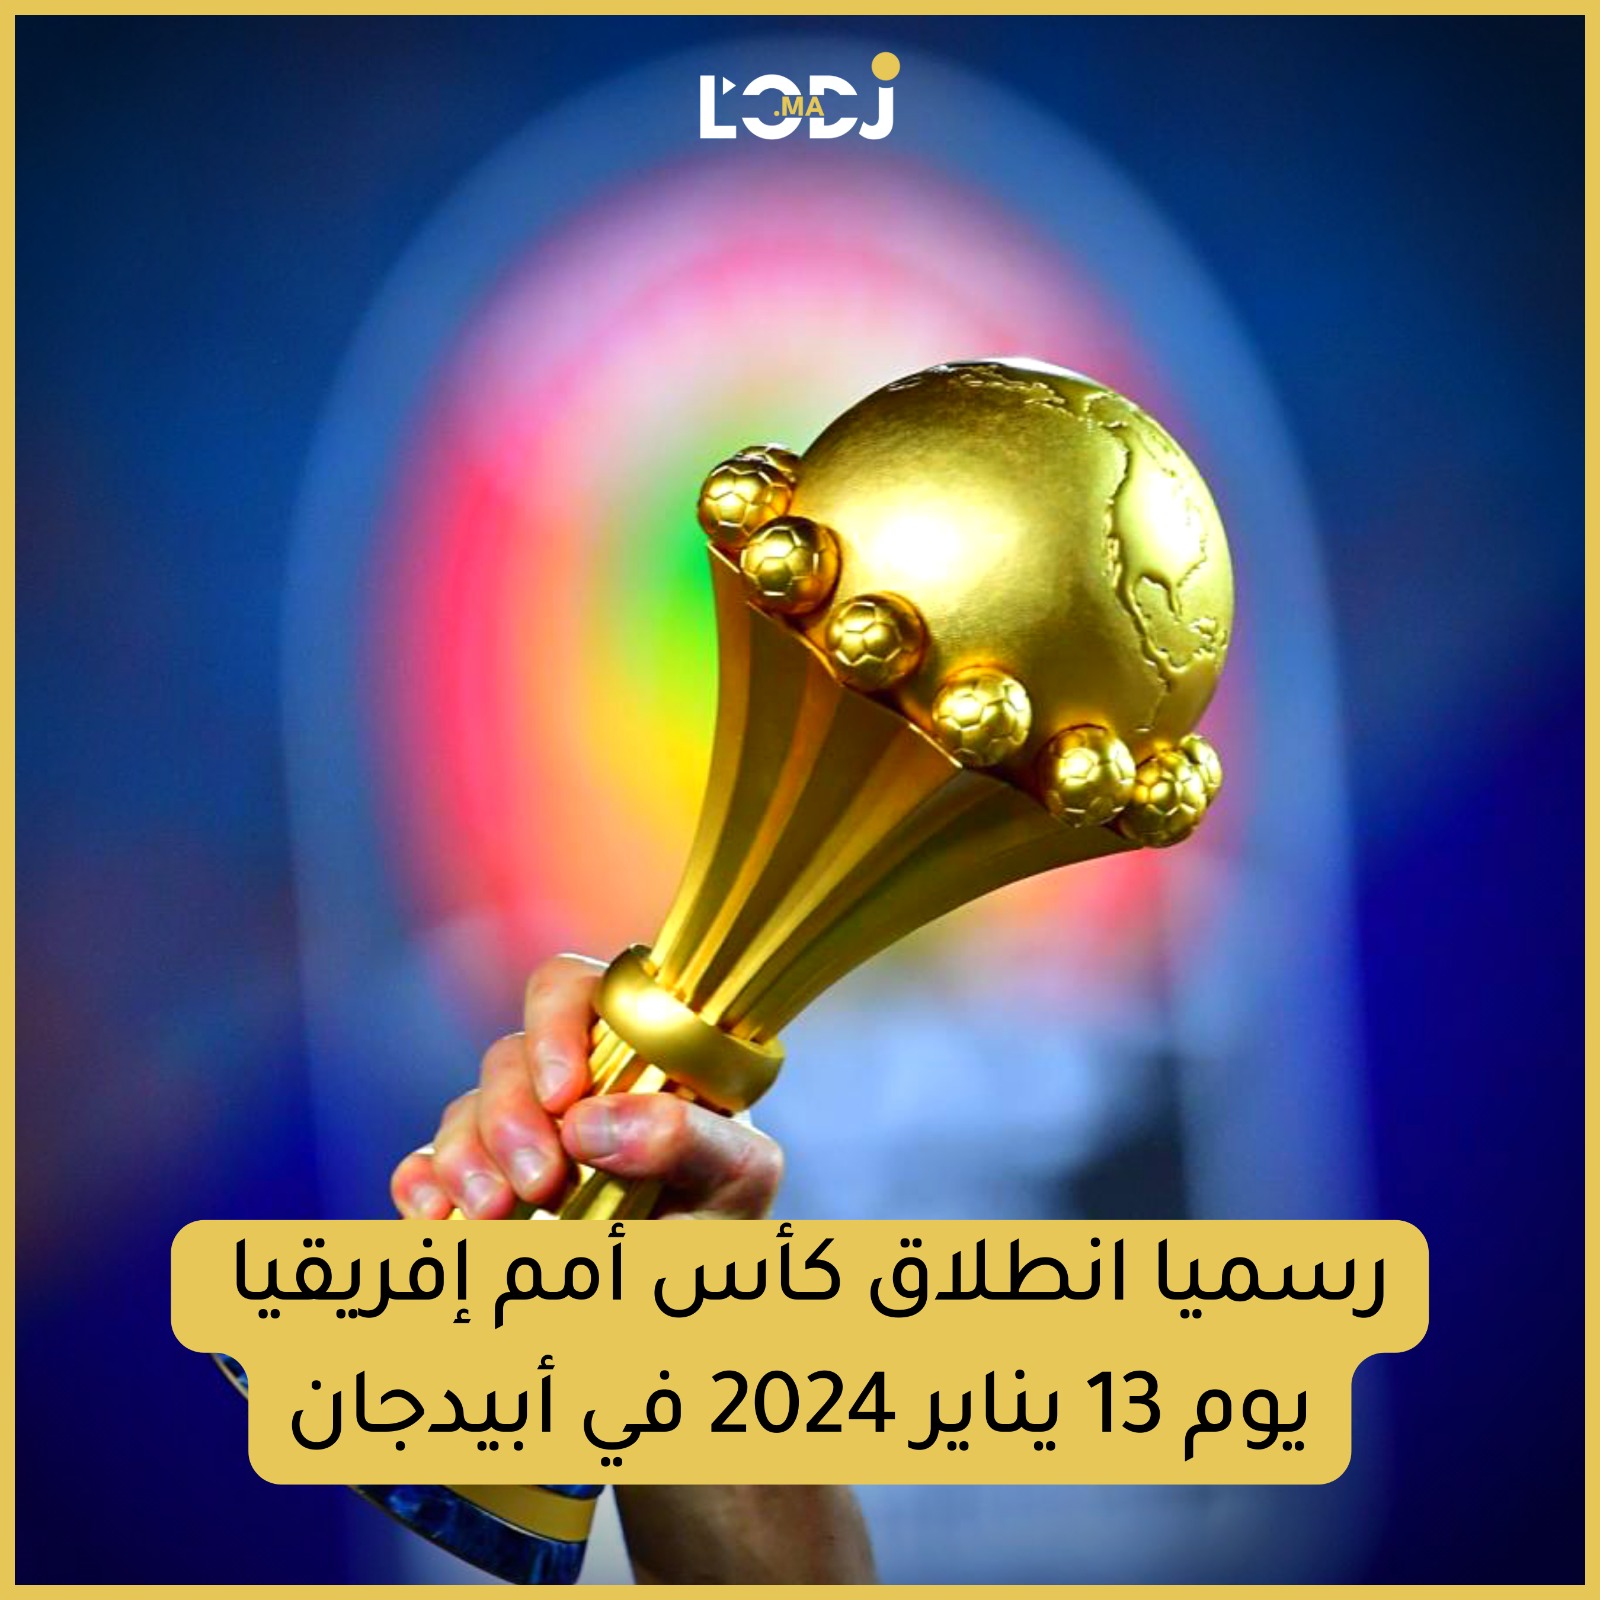 رسميا : مواعيد وتوقيت مباريات كأس أمم إفريقيا 2023 كوت ديفوار توتال إنيرجيز